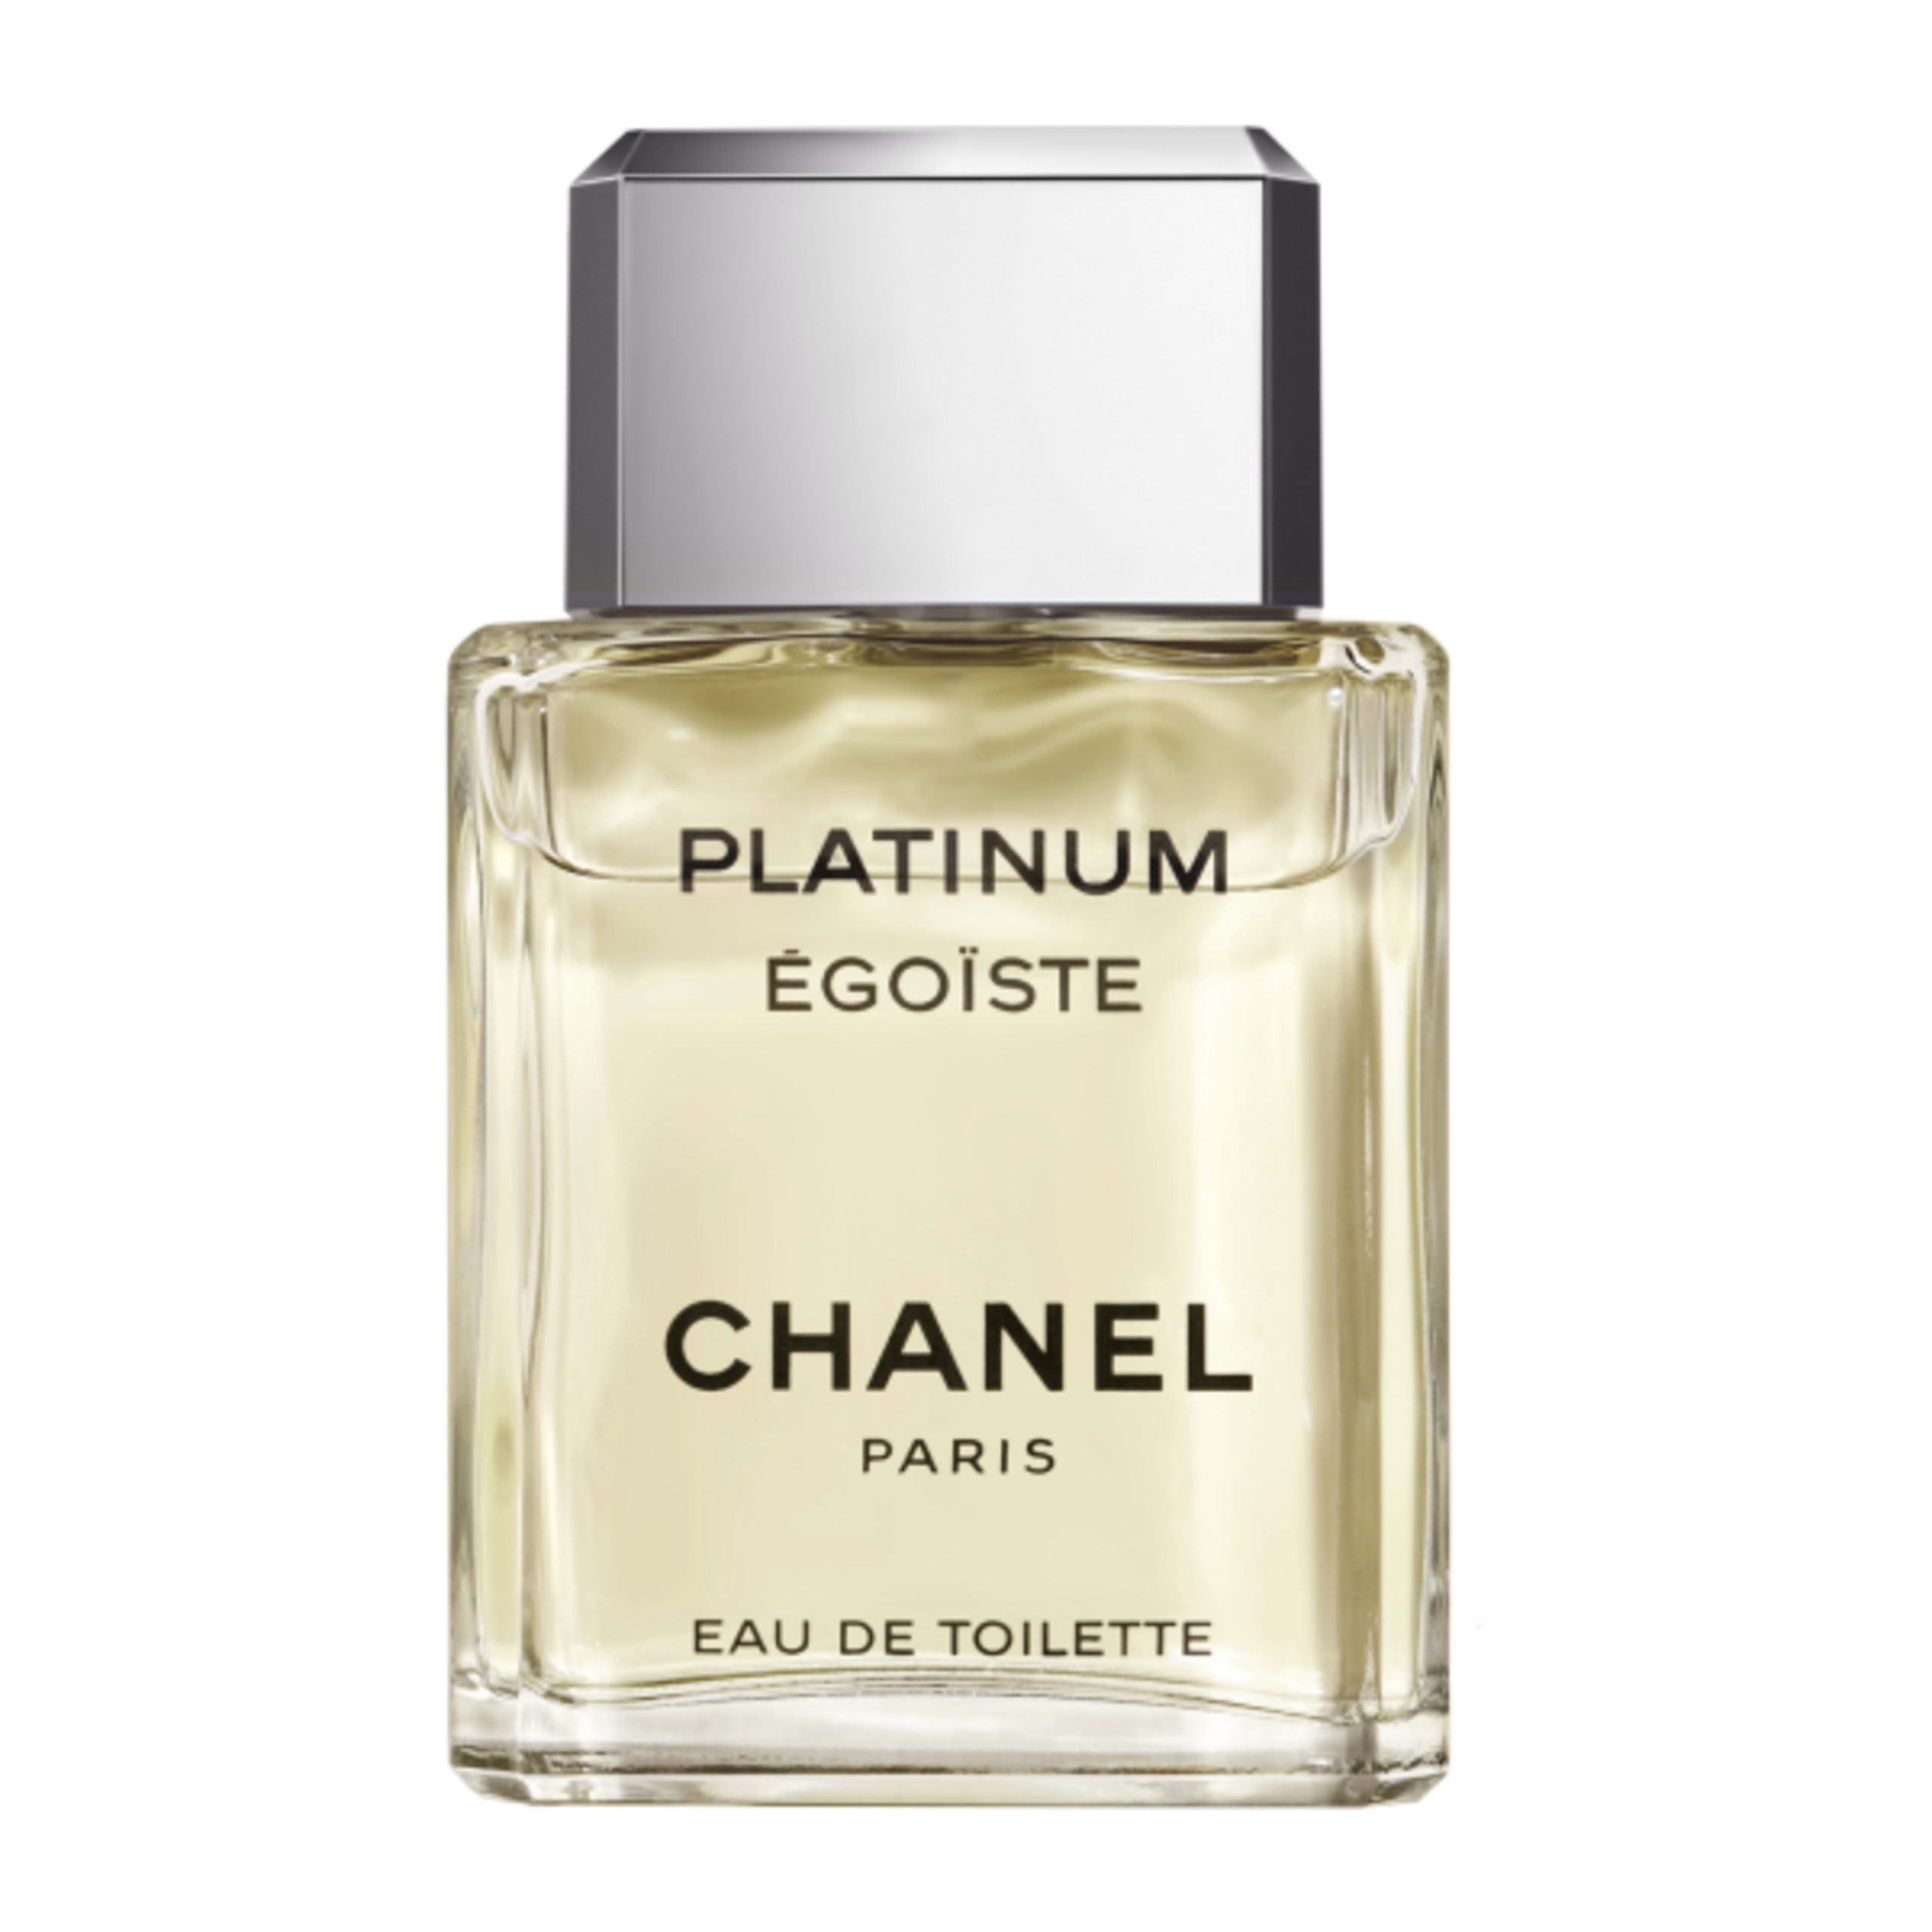 Chanel Platinum Egoiste Woda Toaletowa 100 ml  Opinie i ceny na Ceneopl